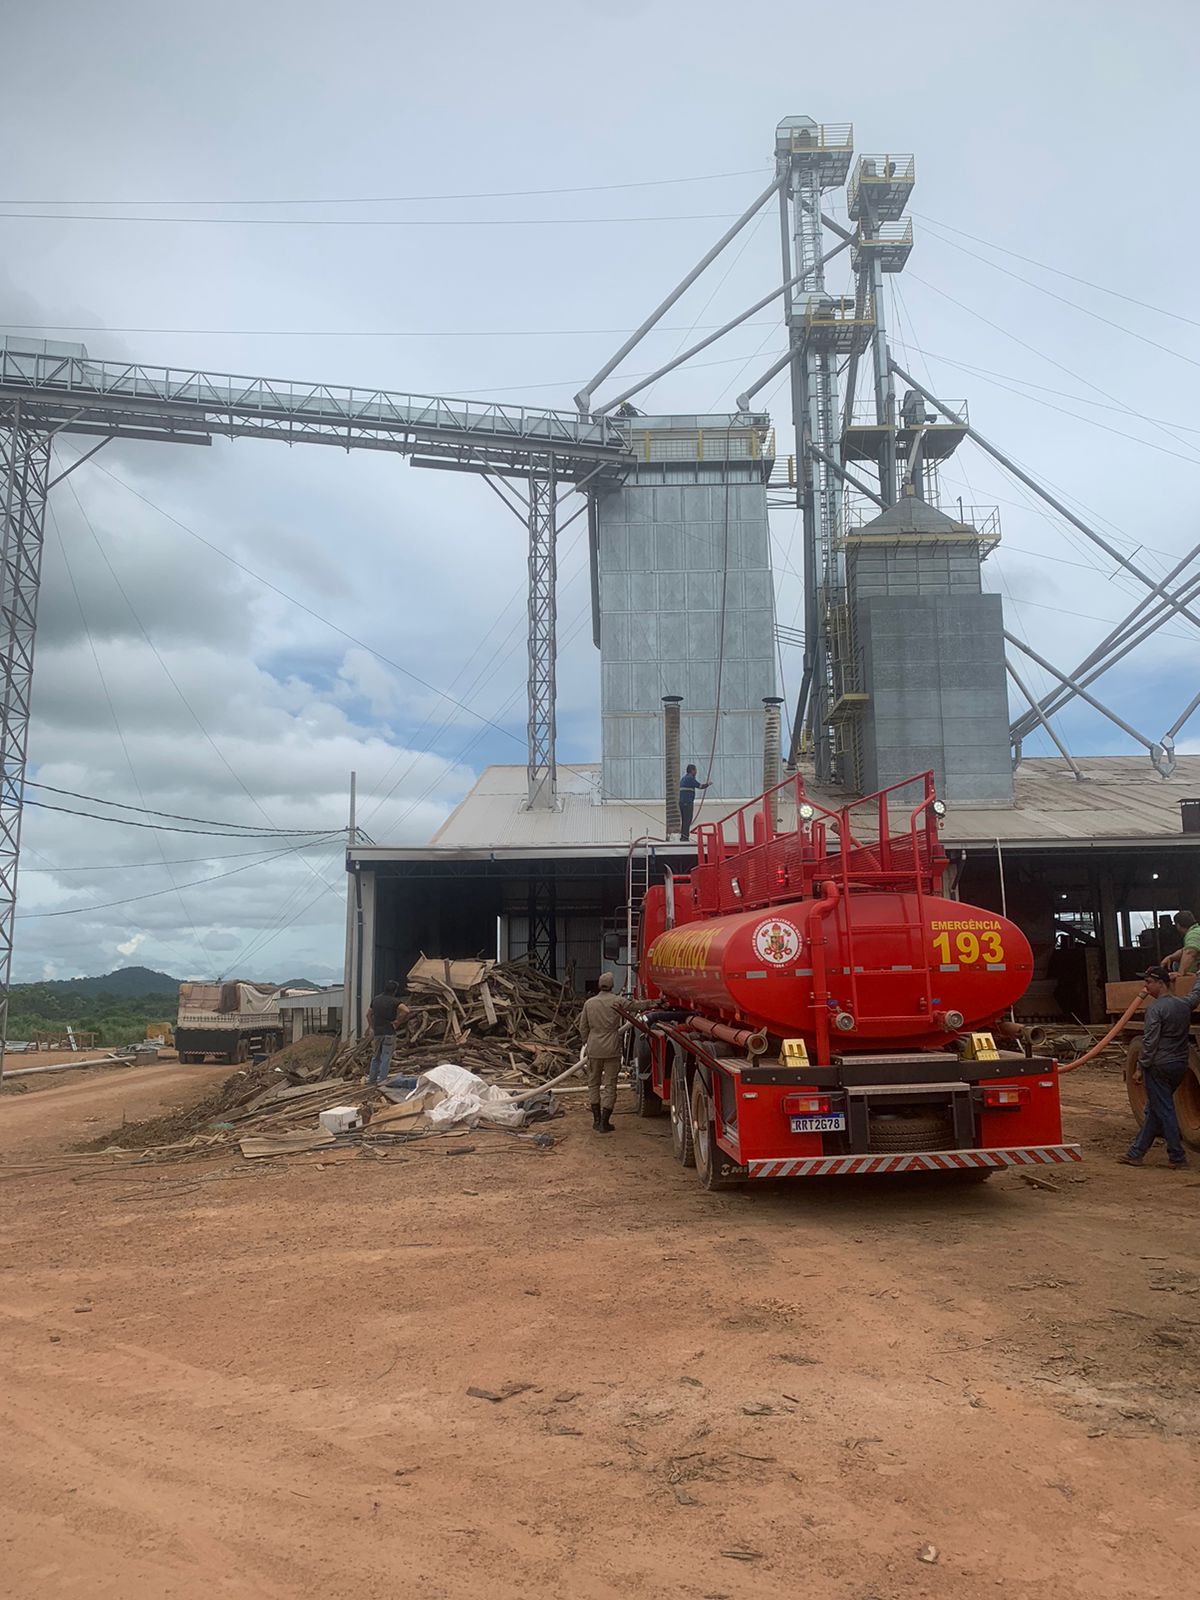 Corpo de Bombeiros de Guarantã do Norte apaga incêndio em um secador de grãos localizado na estrada w50 no município de Matupá.